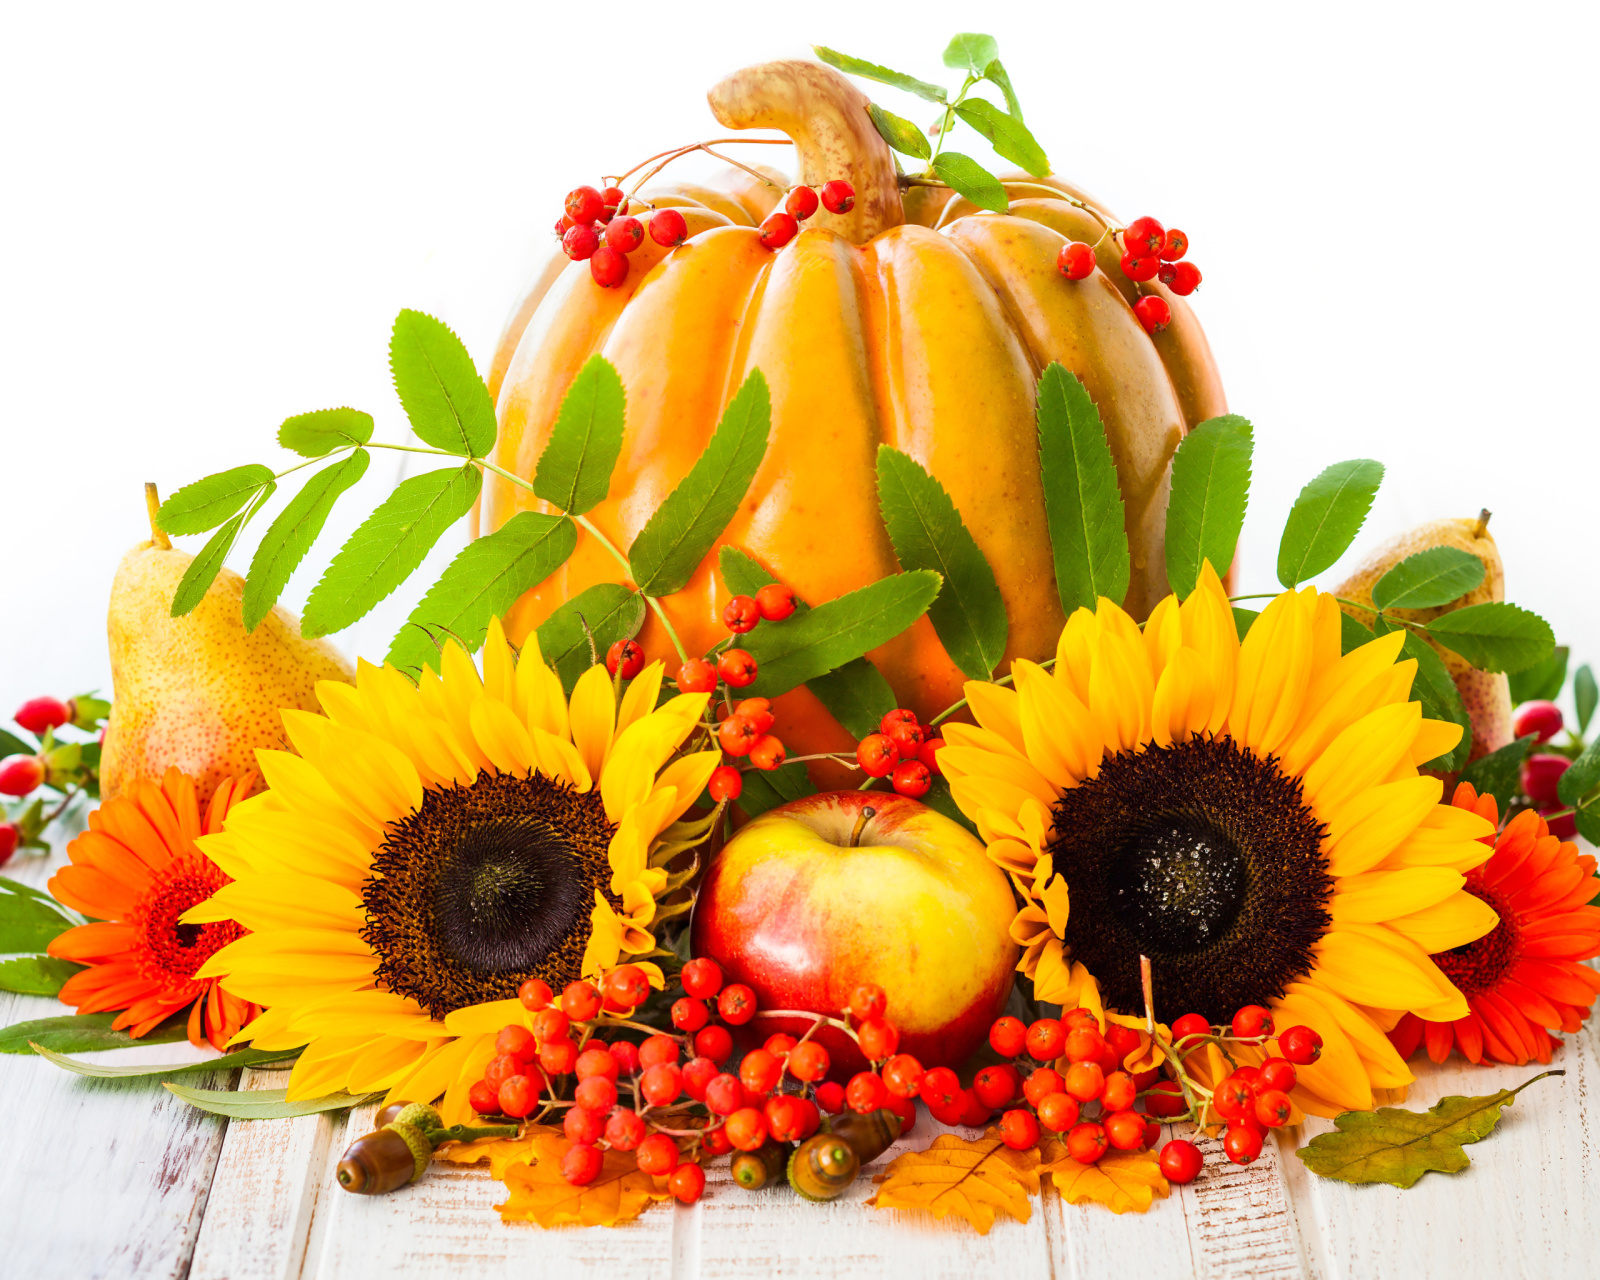 Harvest Pumpkin and Sunflowers screenshot #1 1600x1280